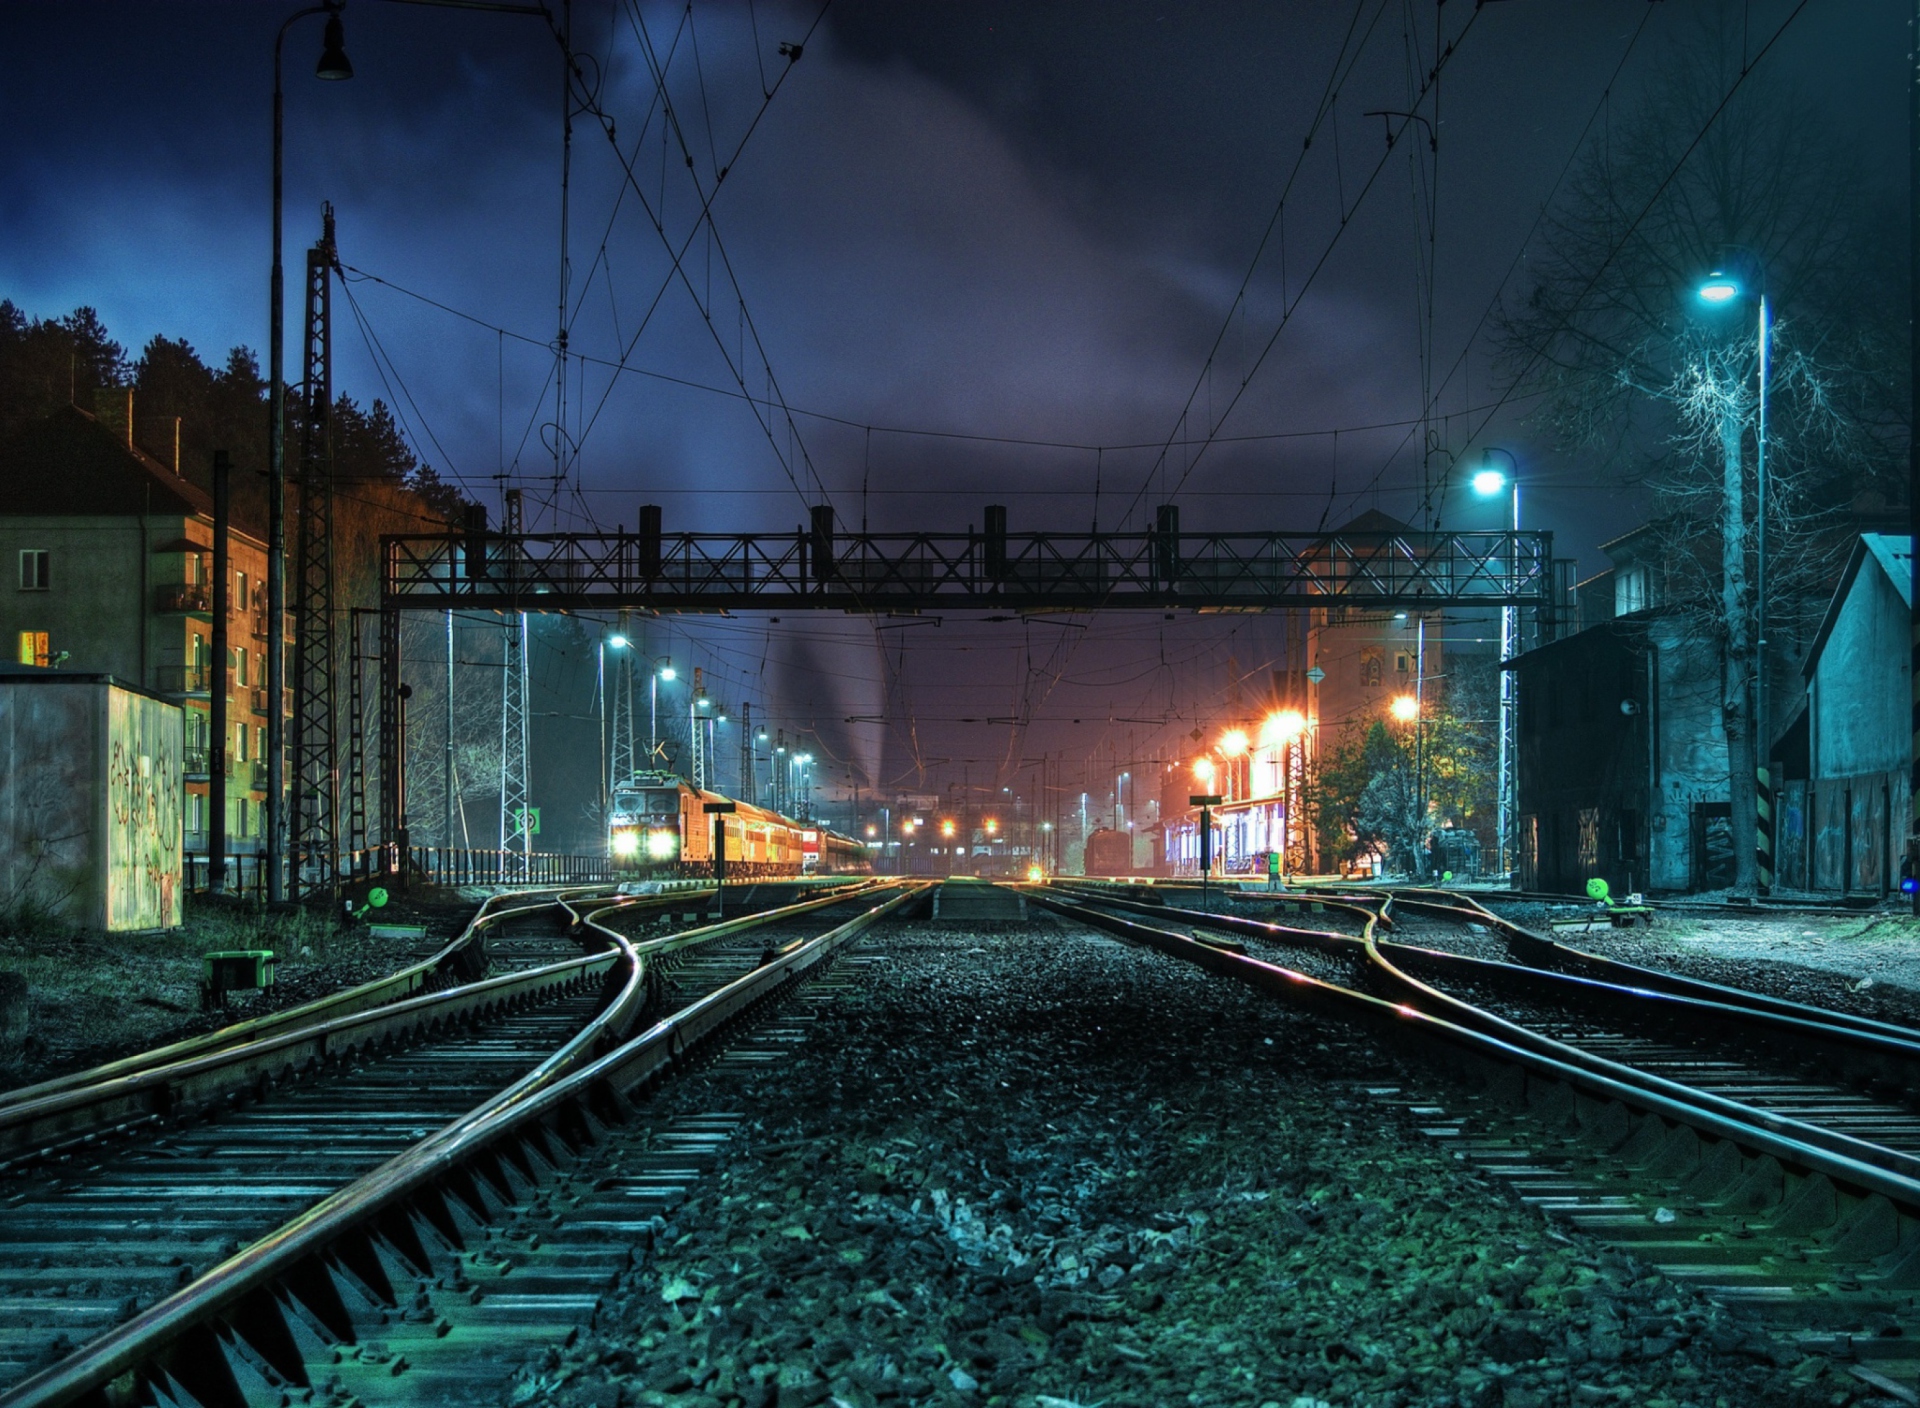 Обои Railway Station At Night 1920x1408